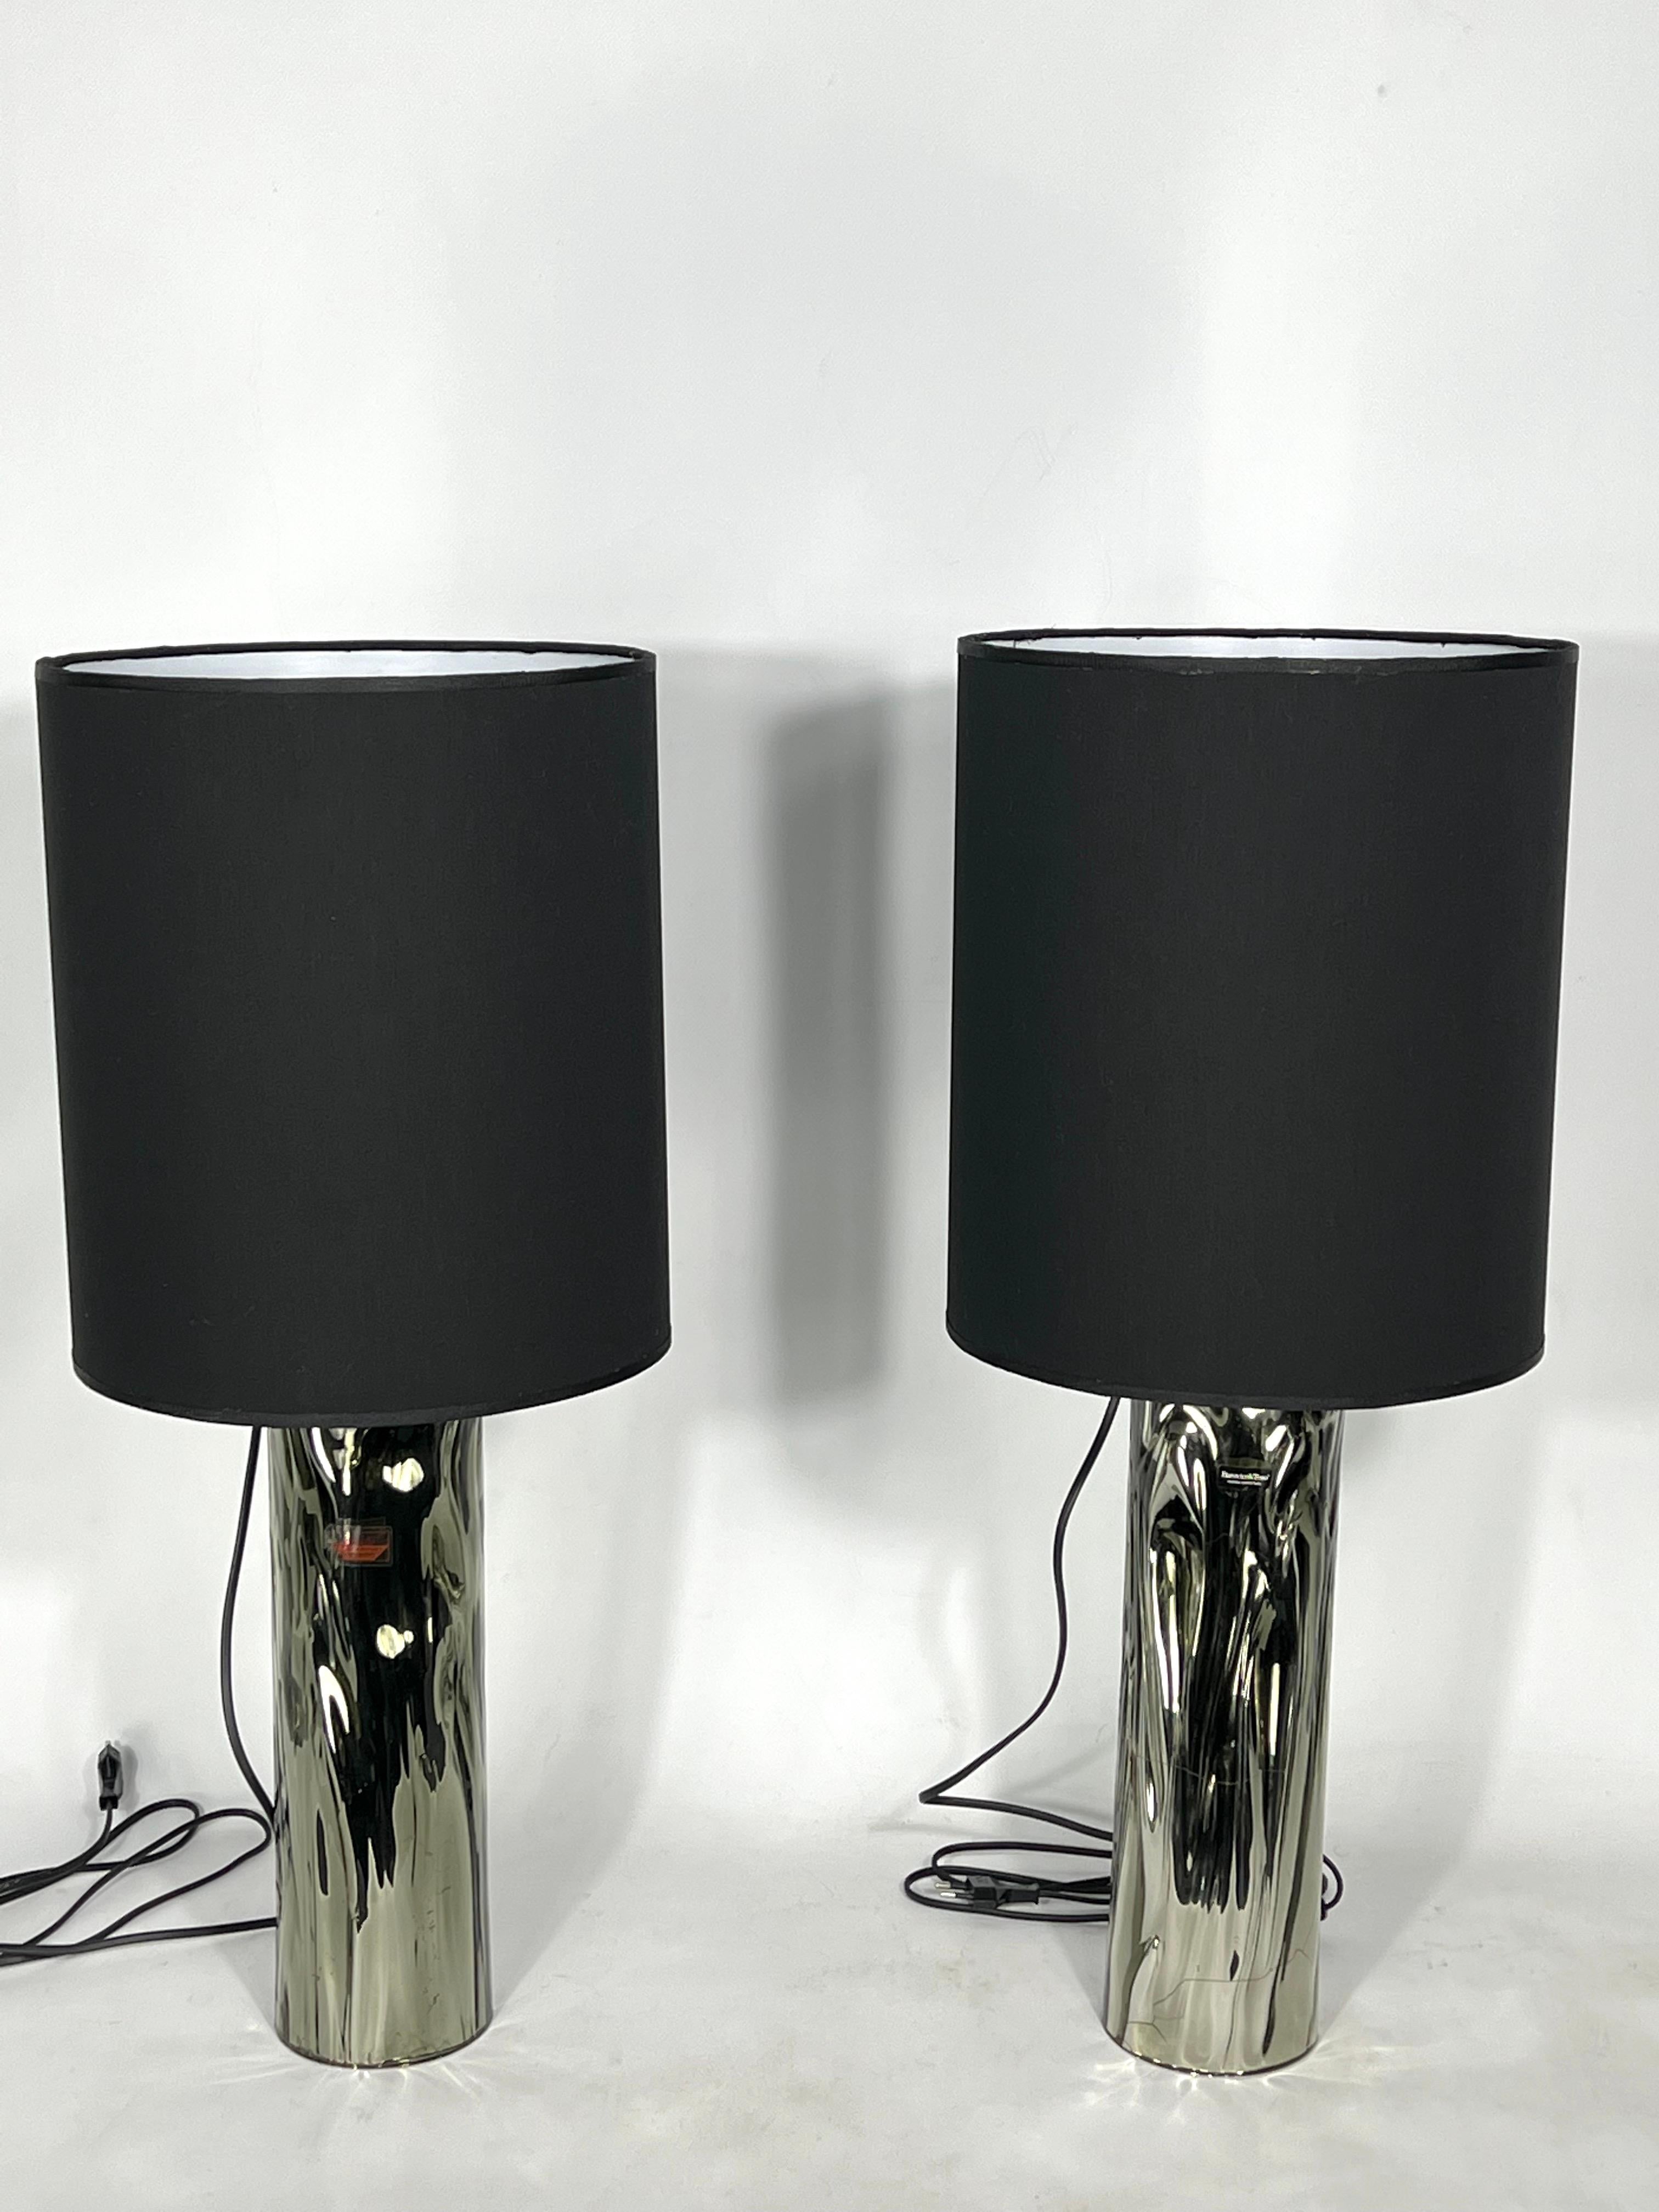 Bon état vintage avec trace normale d'âge et d'utilisation pour cet ensemble de deux lampes de table produites en Italie pendant les années 70 par Barovier&Toso. Labellisé. Chacun d'eux permet de monter une douille pour une lampe E27.Fonctionne